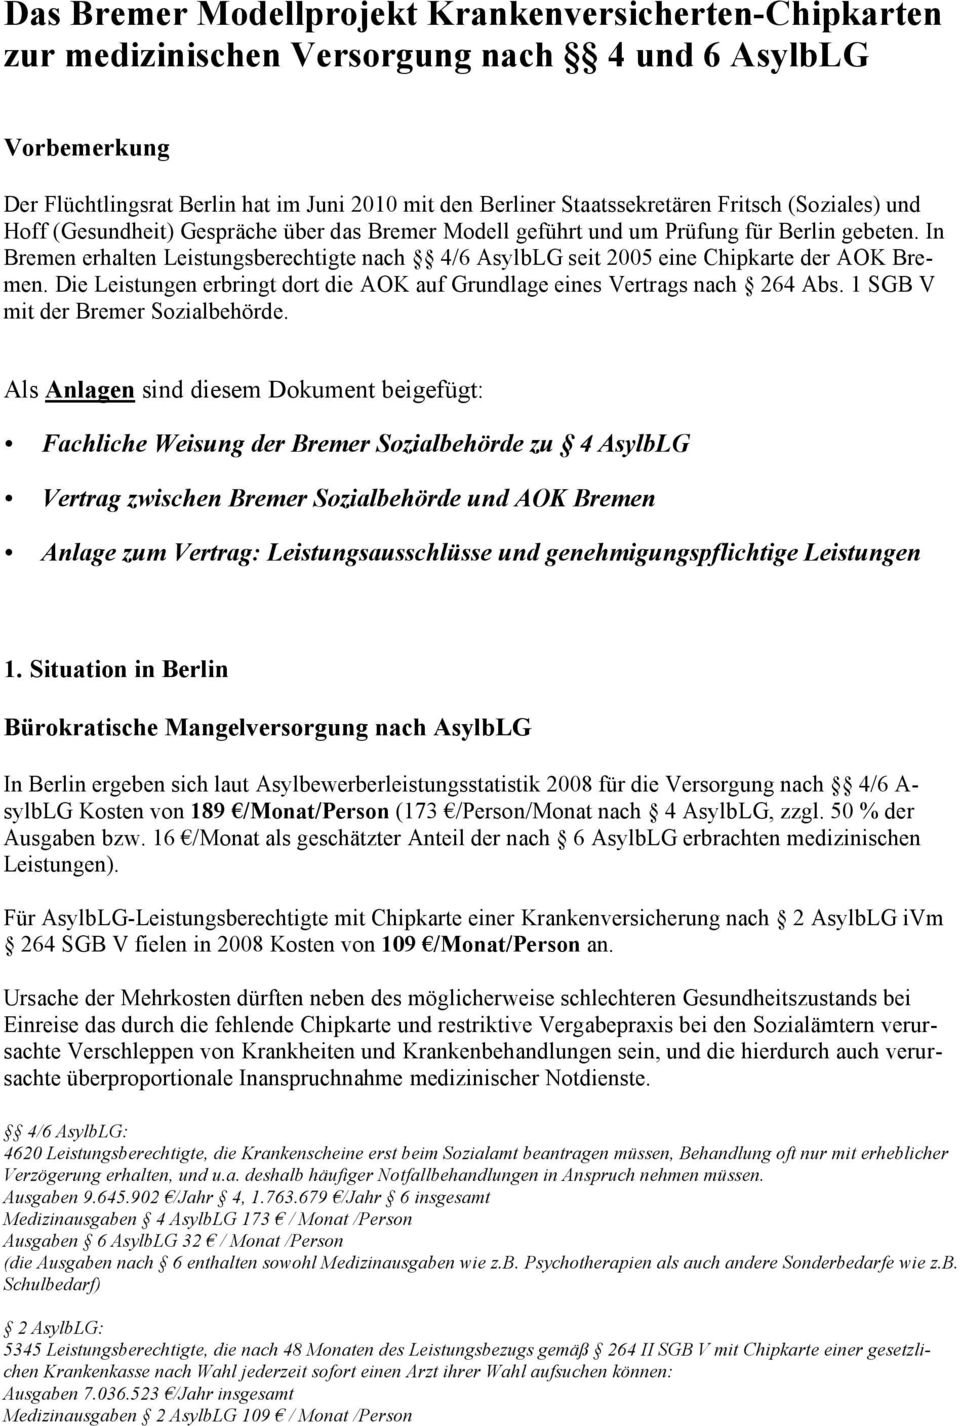 In Bremen erhalten Leistungsberechtigte nach 4/6 AsylbLG seit 2005 eine Chipkarte der AOK Bremen. Die Leistungen erbringt dort die AOK auf Grundlage eines Vertrags nach 264 Abs.